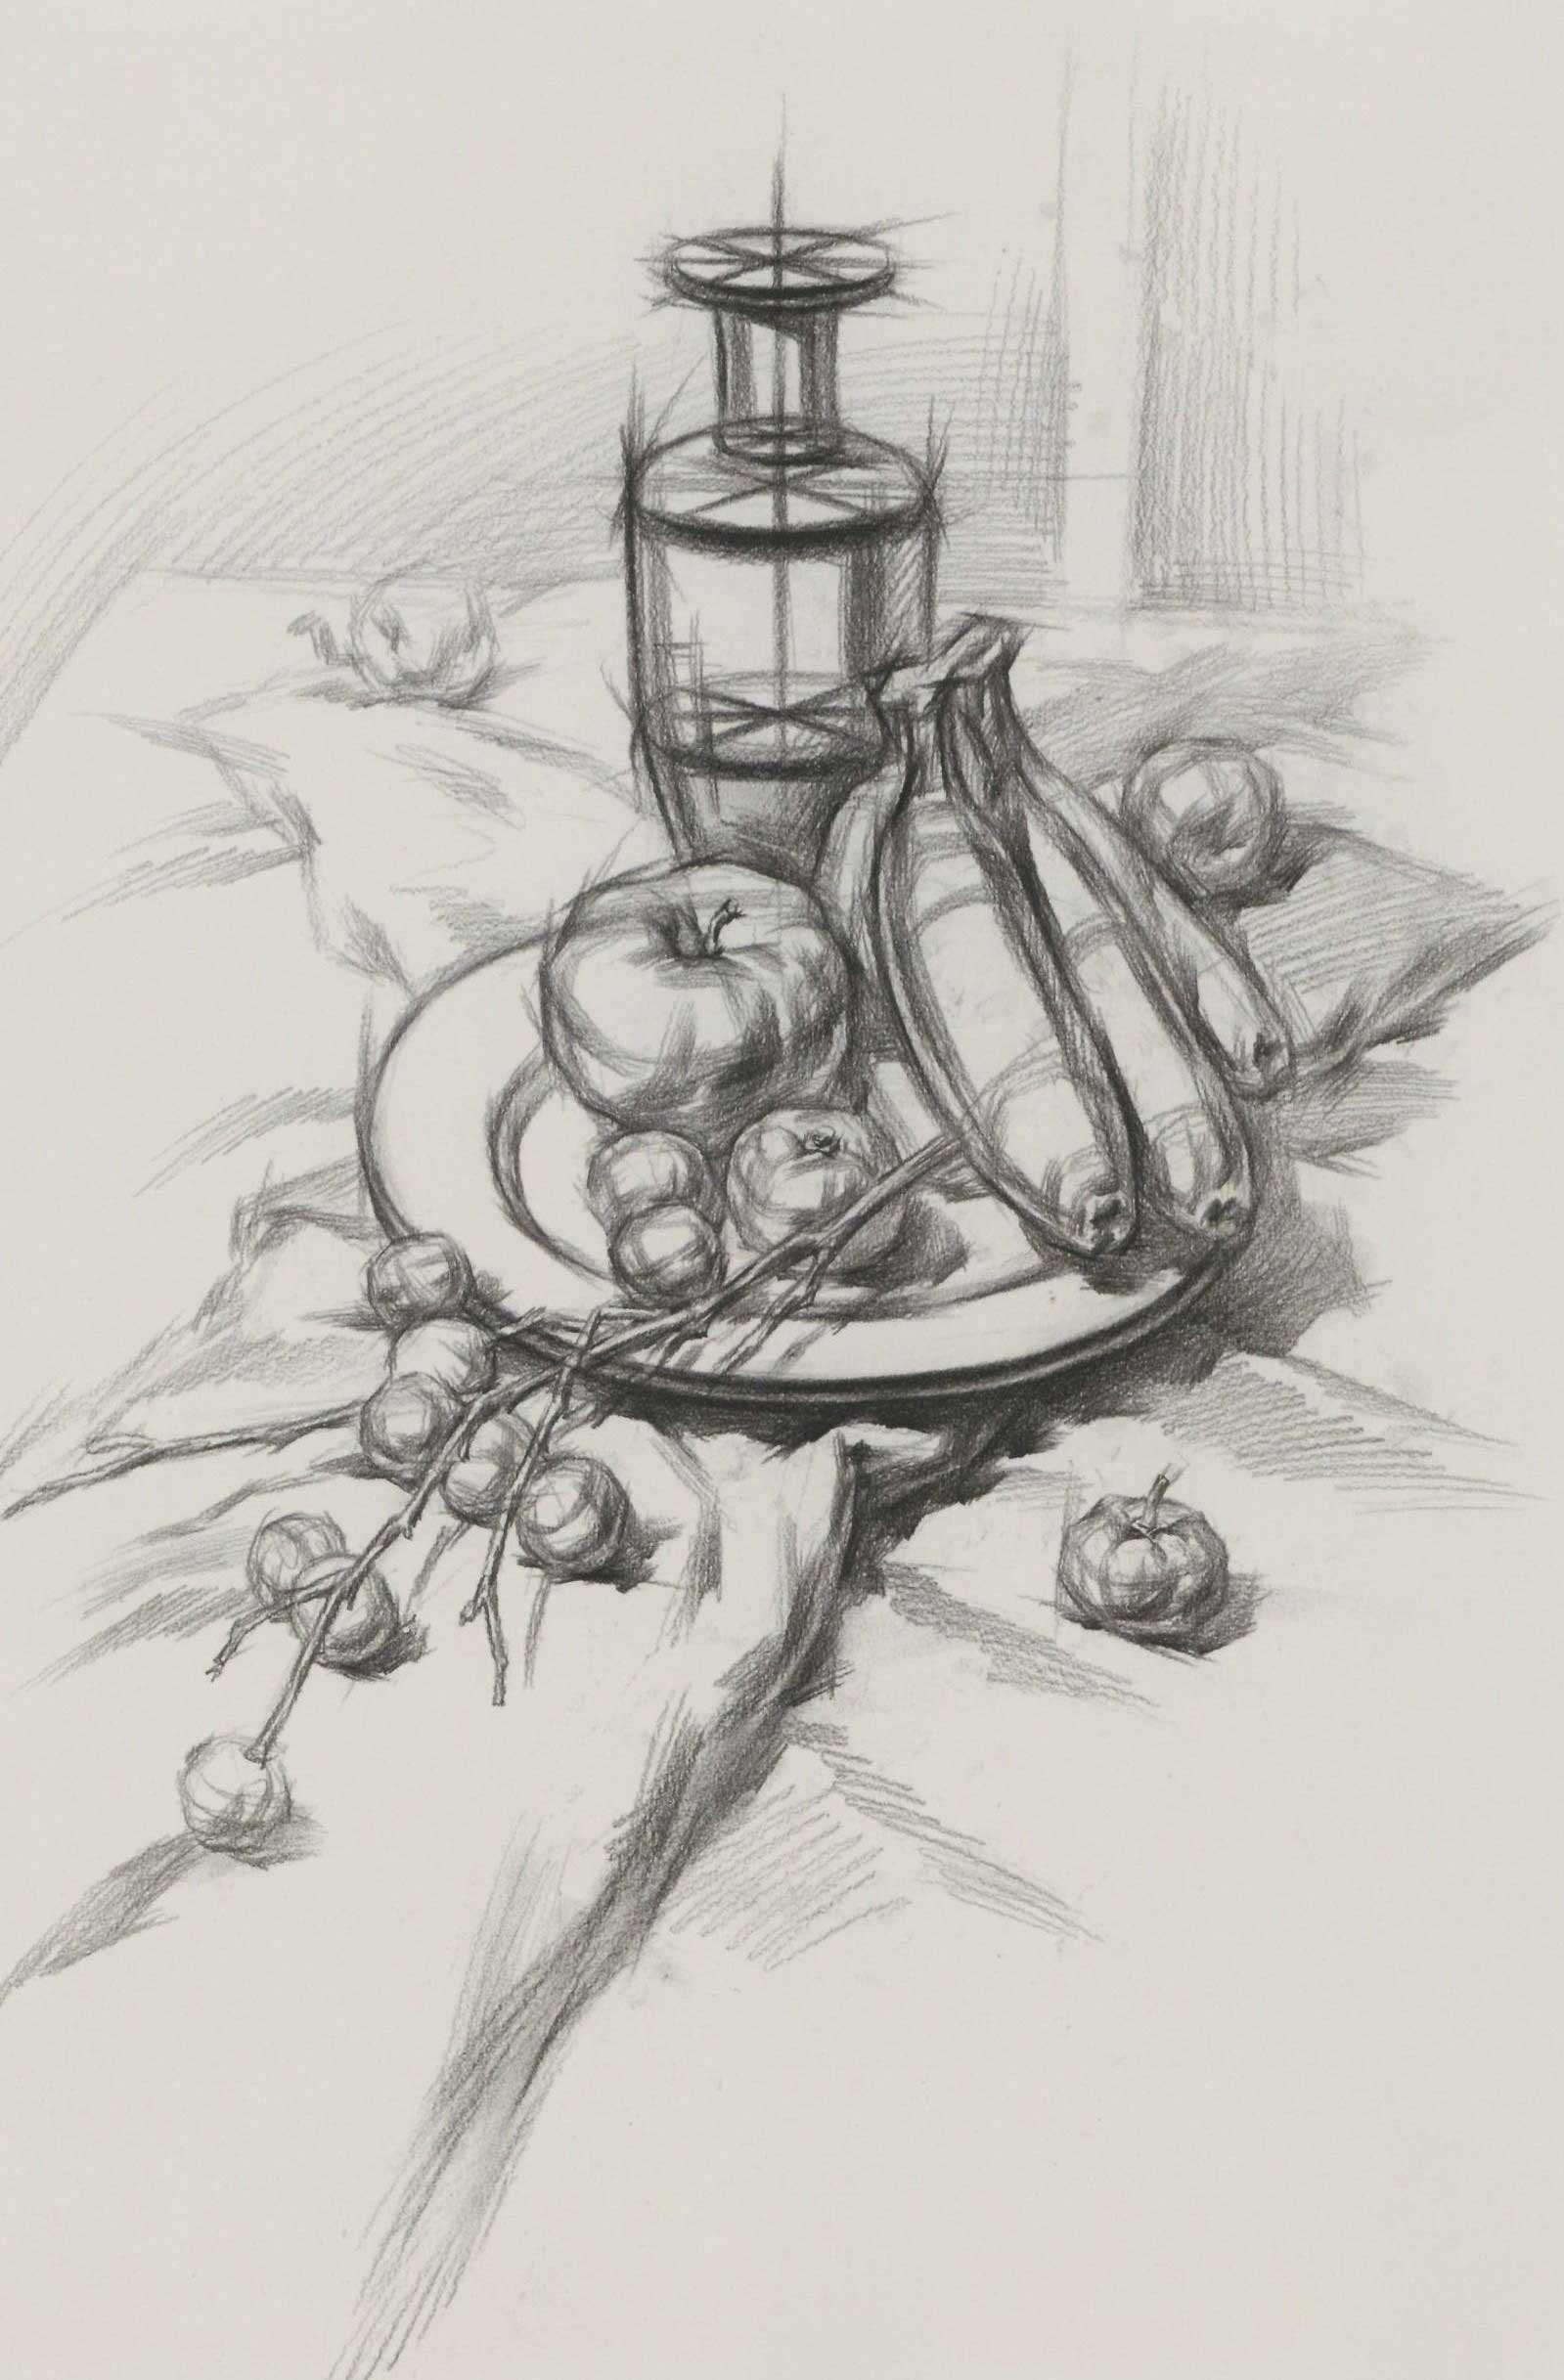 素描静物矿泉水瓶和梨的结构组合步骤图解-普画网